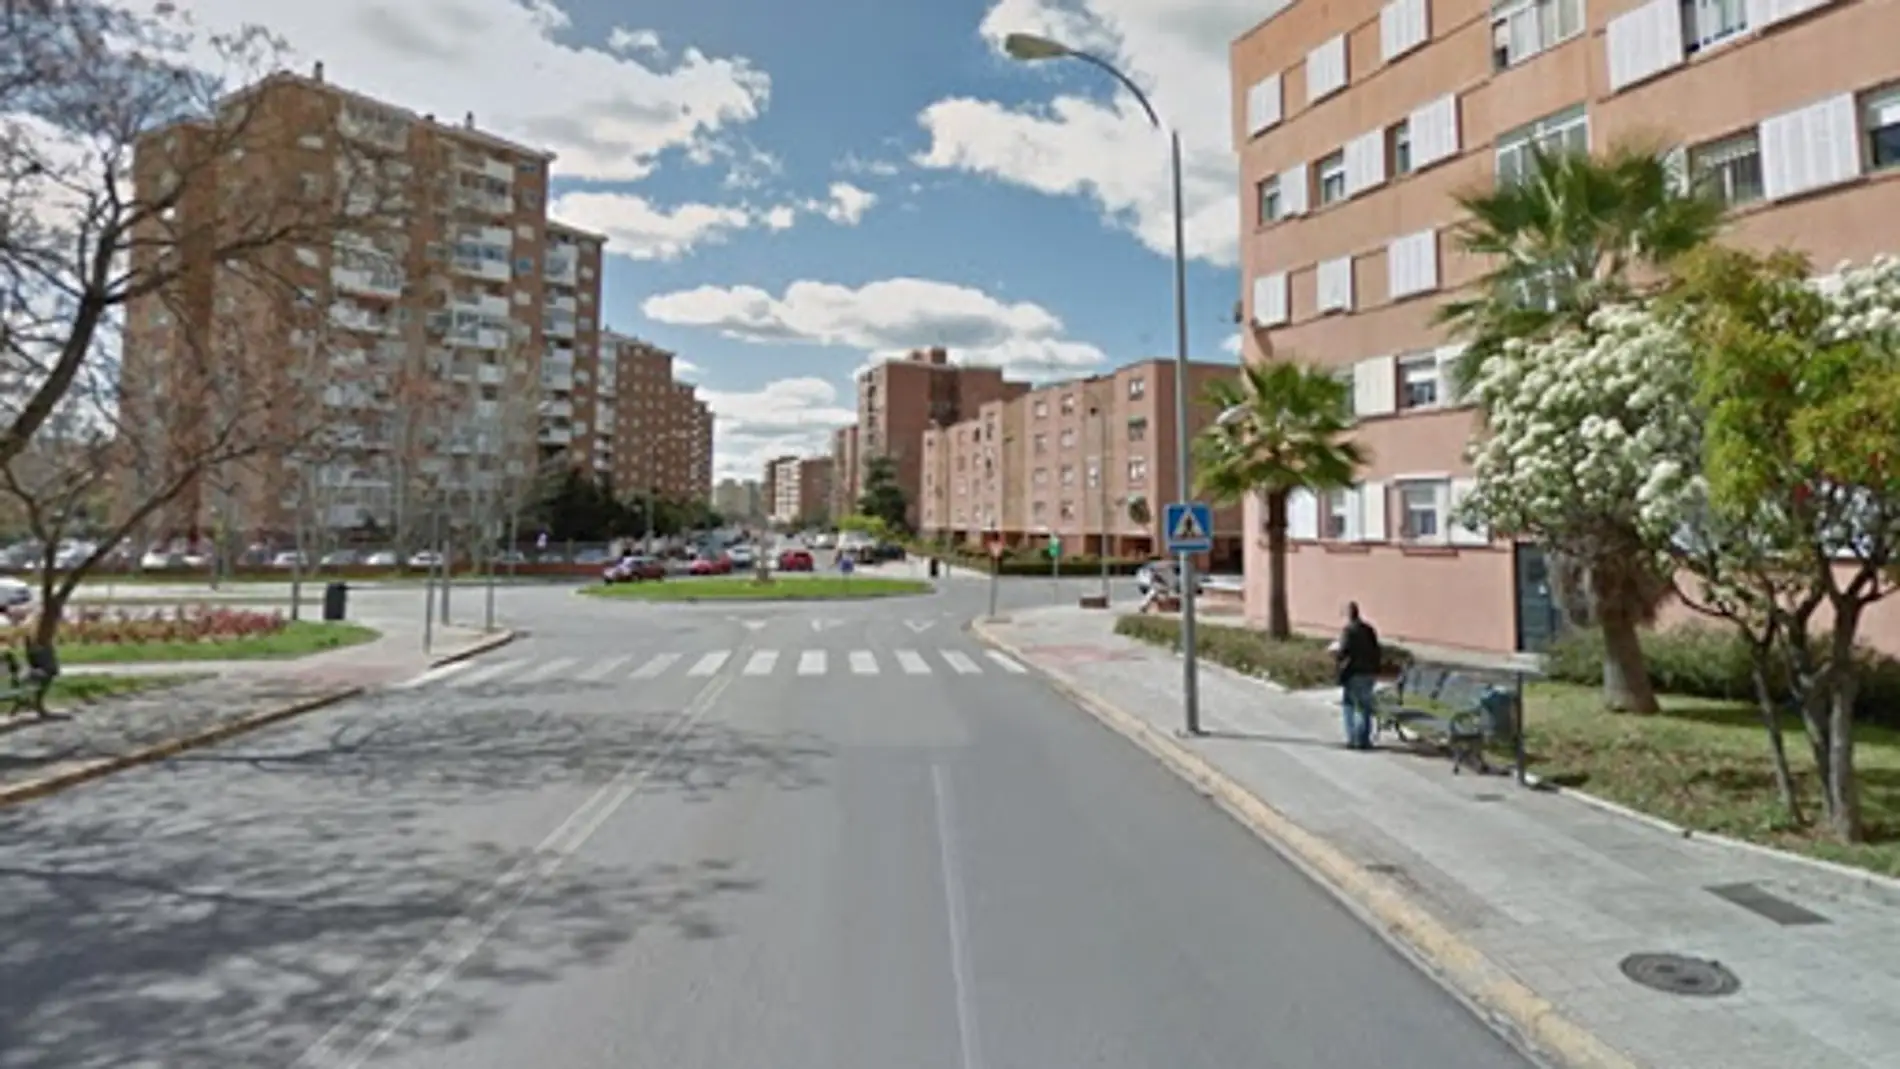 Dos jóvenes resultan heridos graves tras ser atropellado por un vehículo en Badajoz